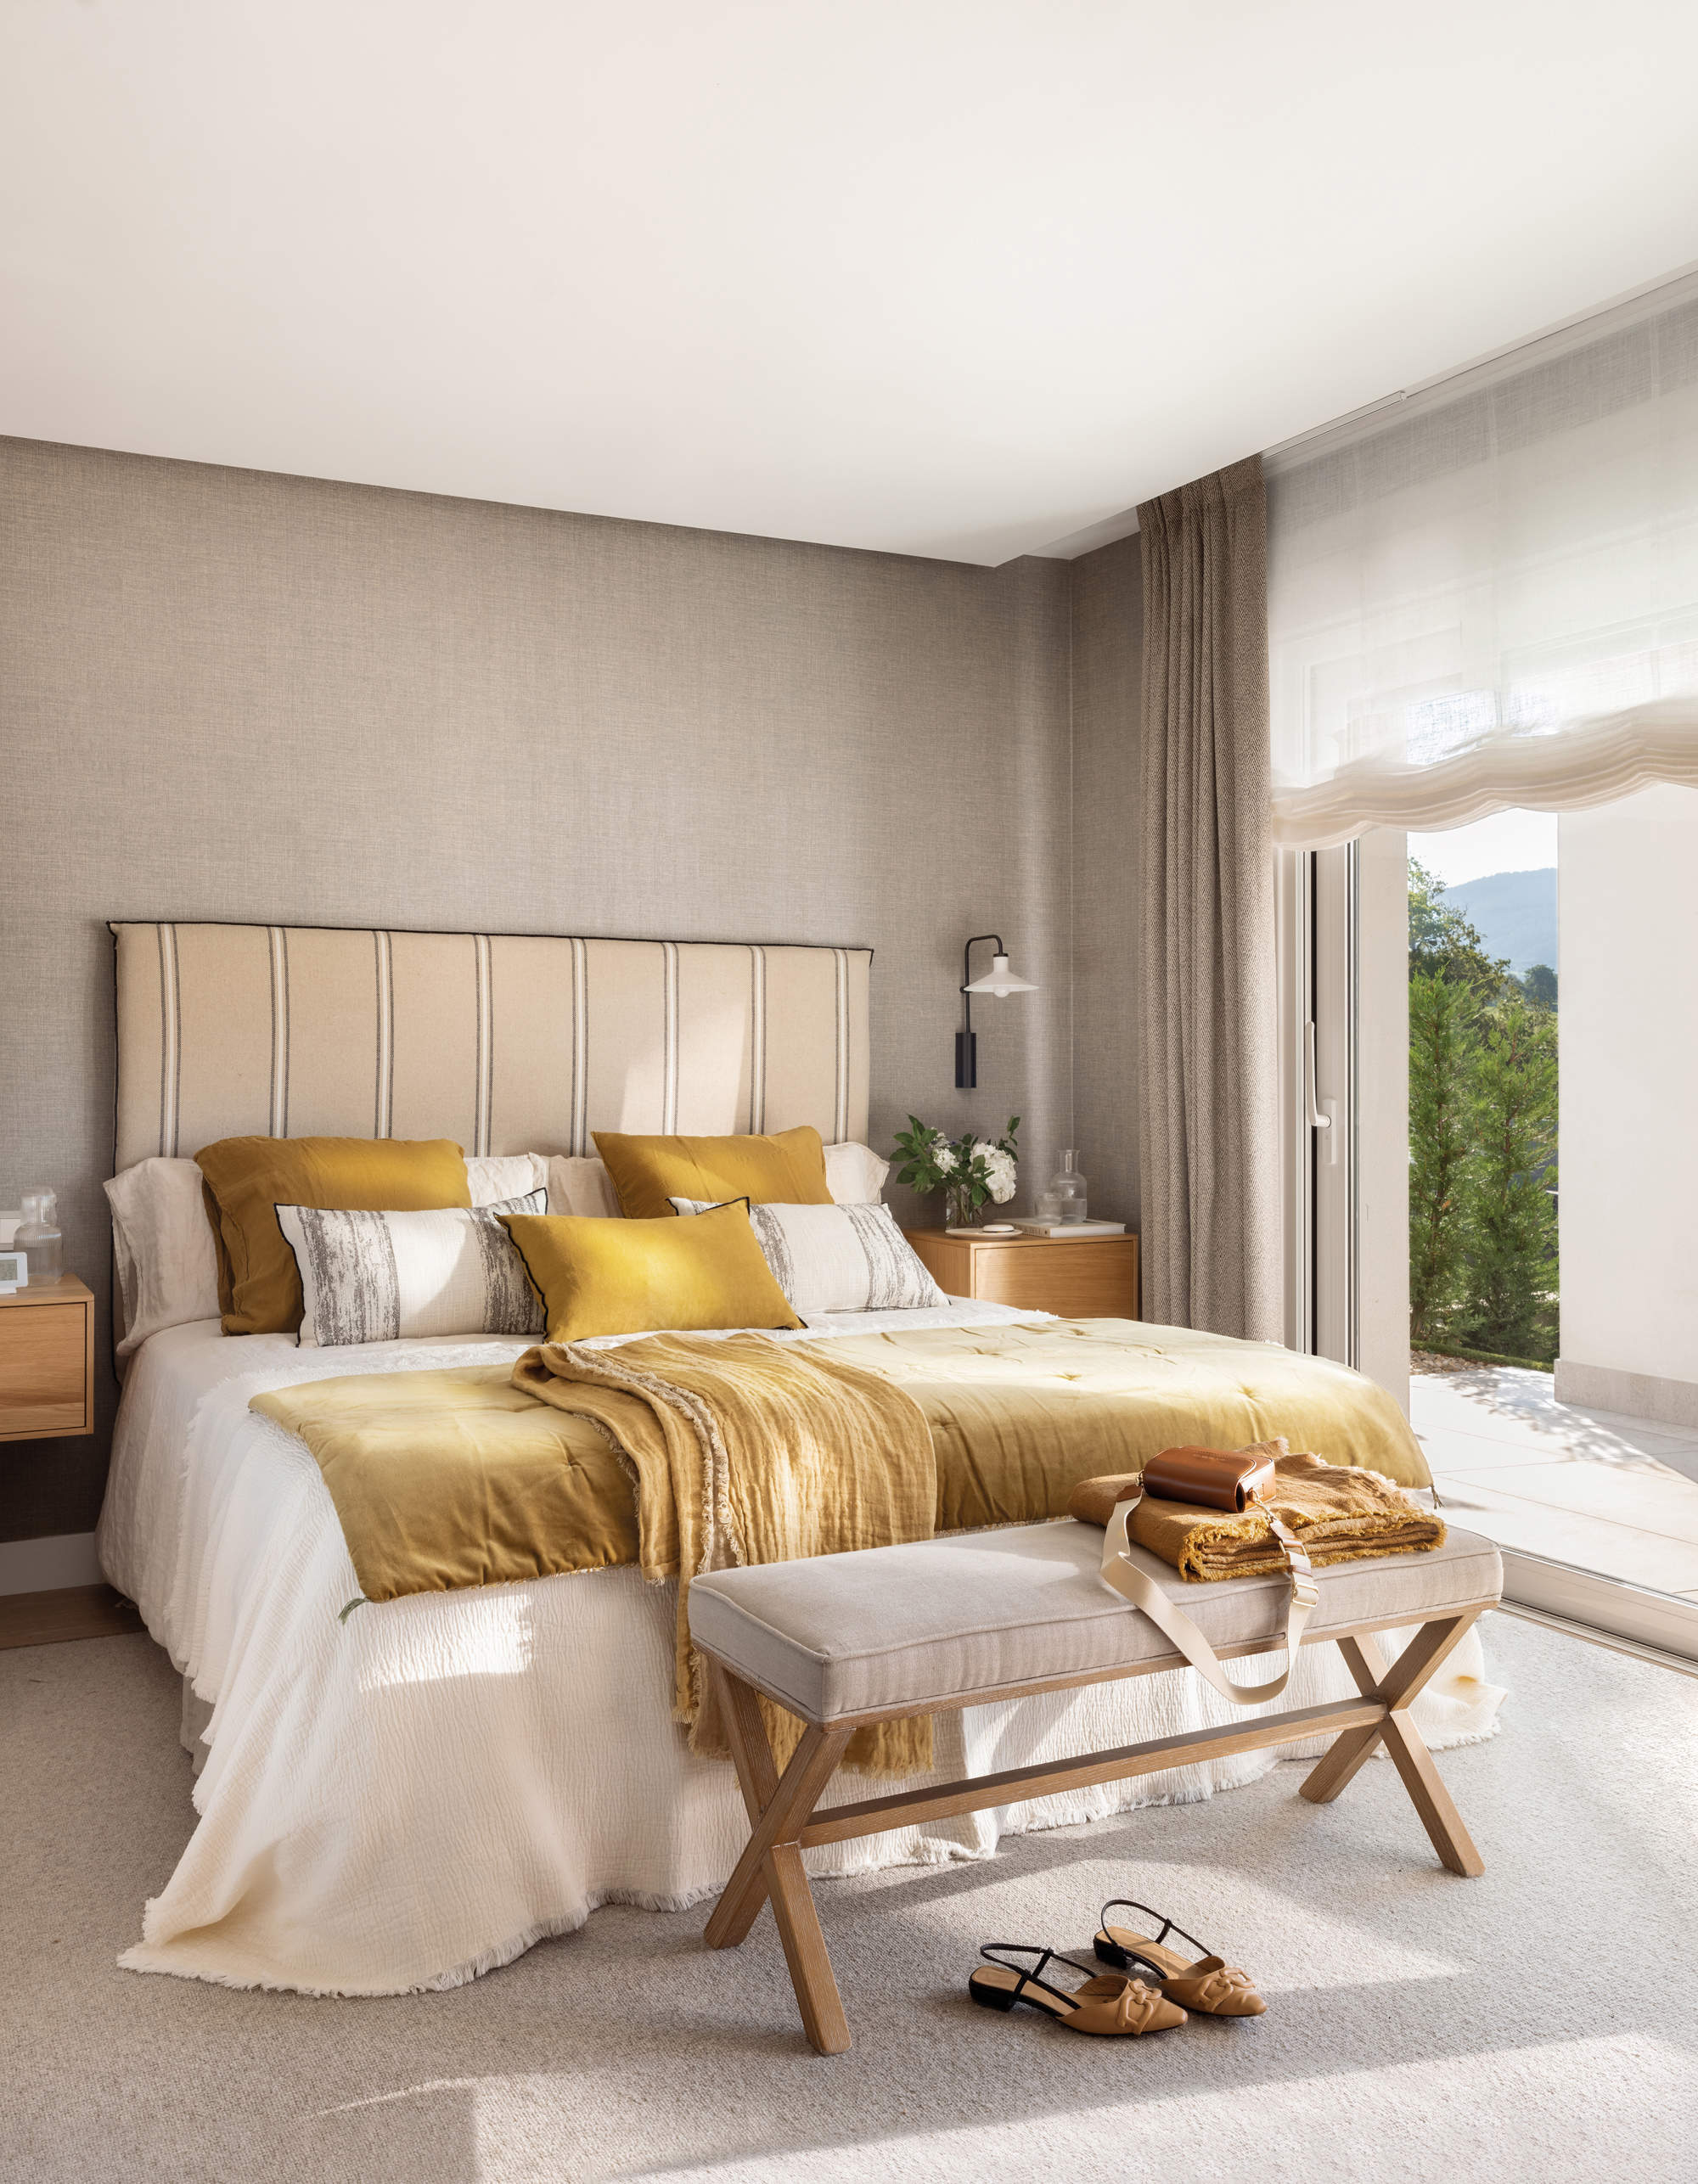 Dormitorio moderno con cabecero tapizado a rayas.